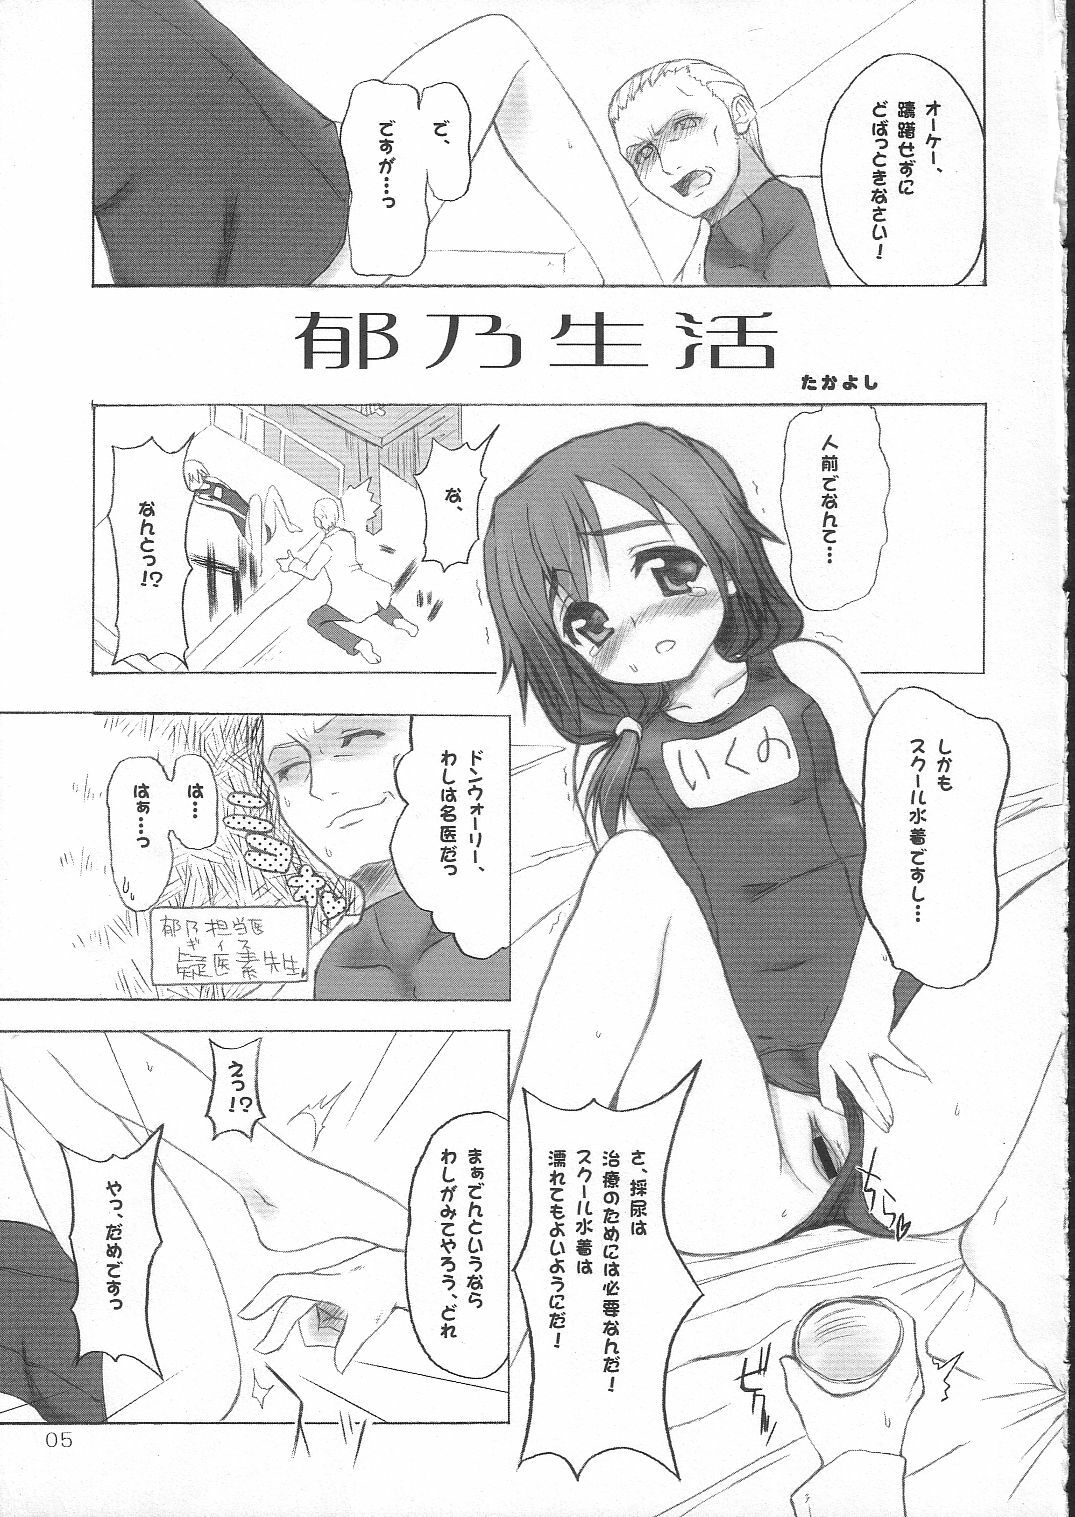 [4T] Ikuno Seikatsu Schmiz (To Heart 2) page 4 full